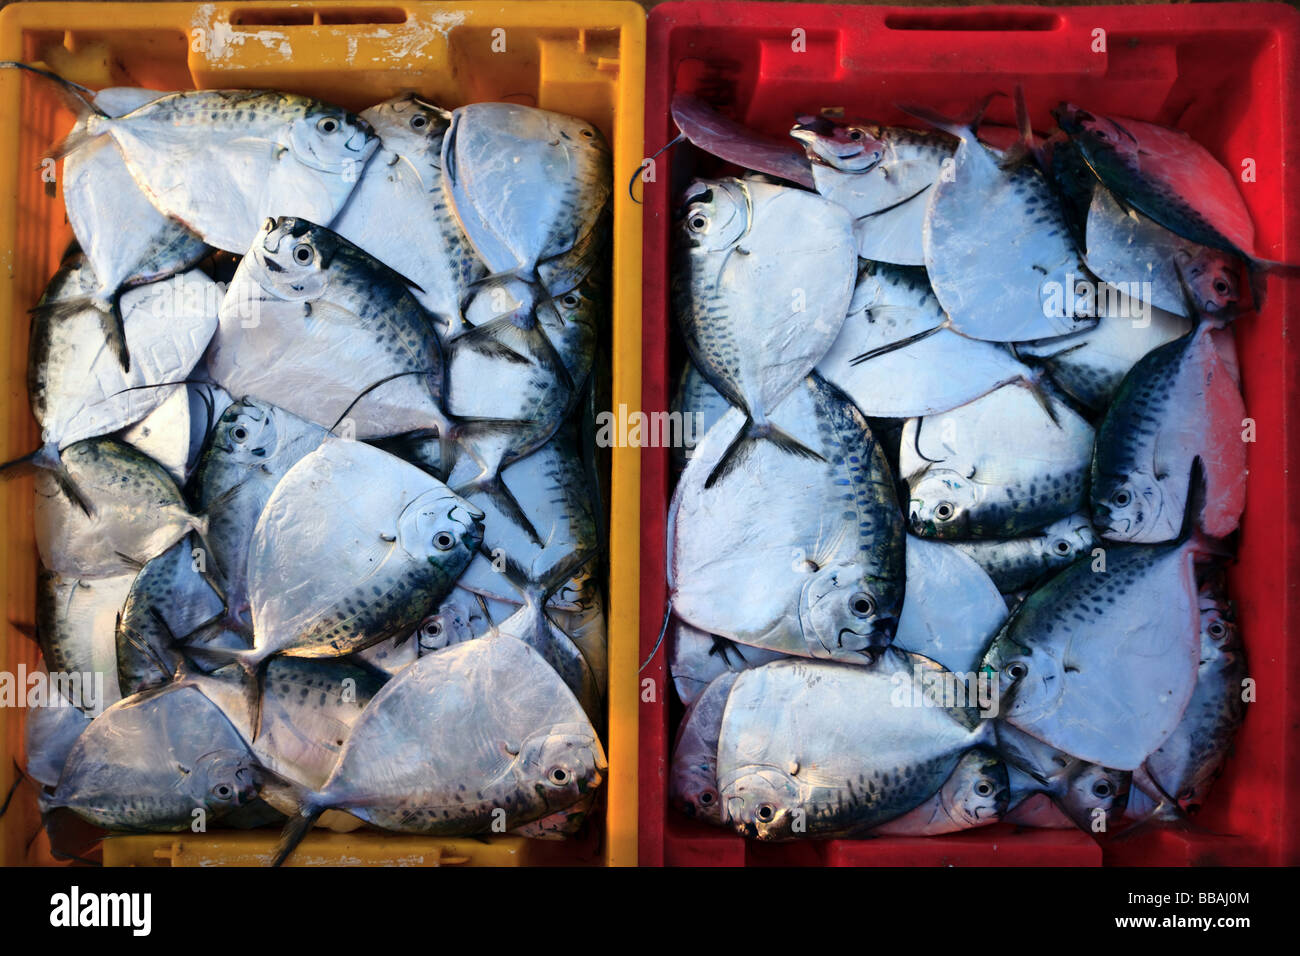 Fischmarkt in Korb auf Fisch Vietnam Stockfoto